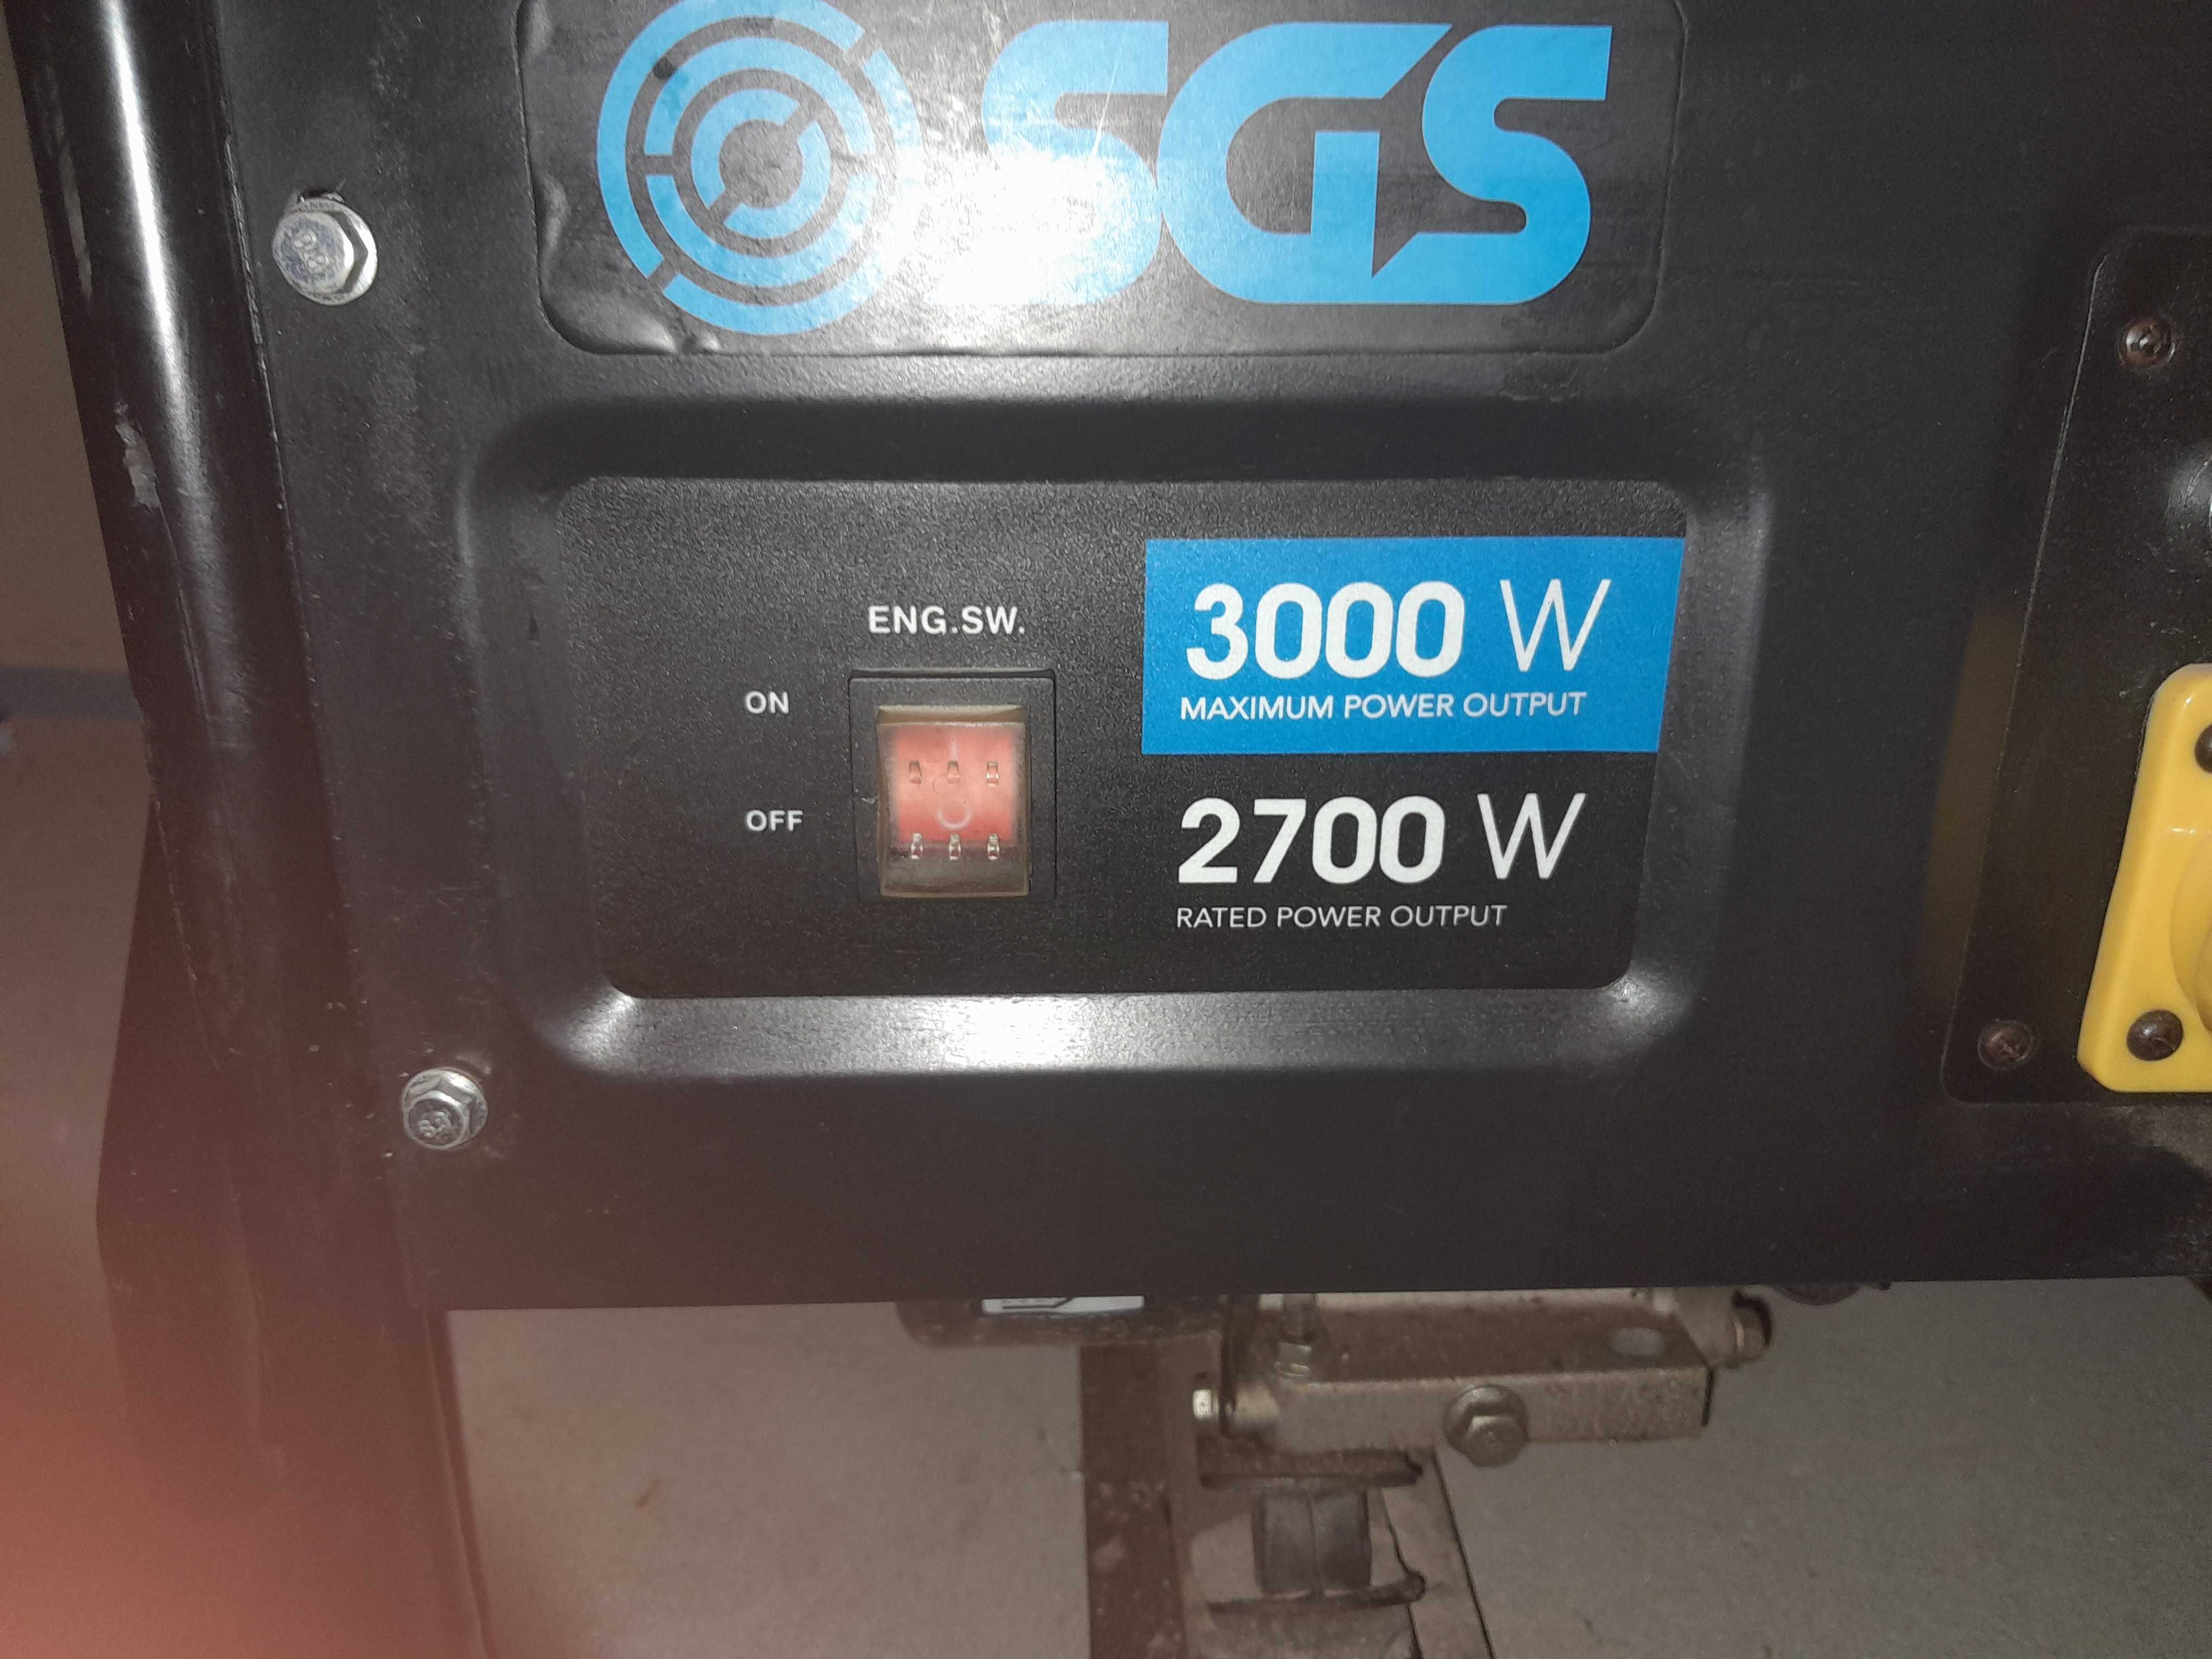 Agregat prądotwórczy SGS 3000